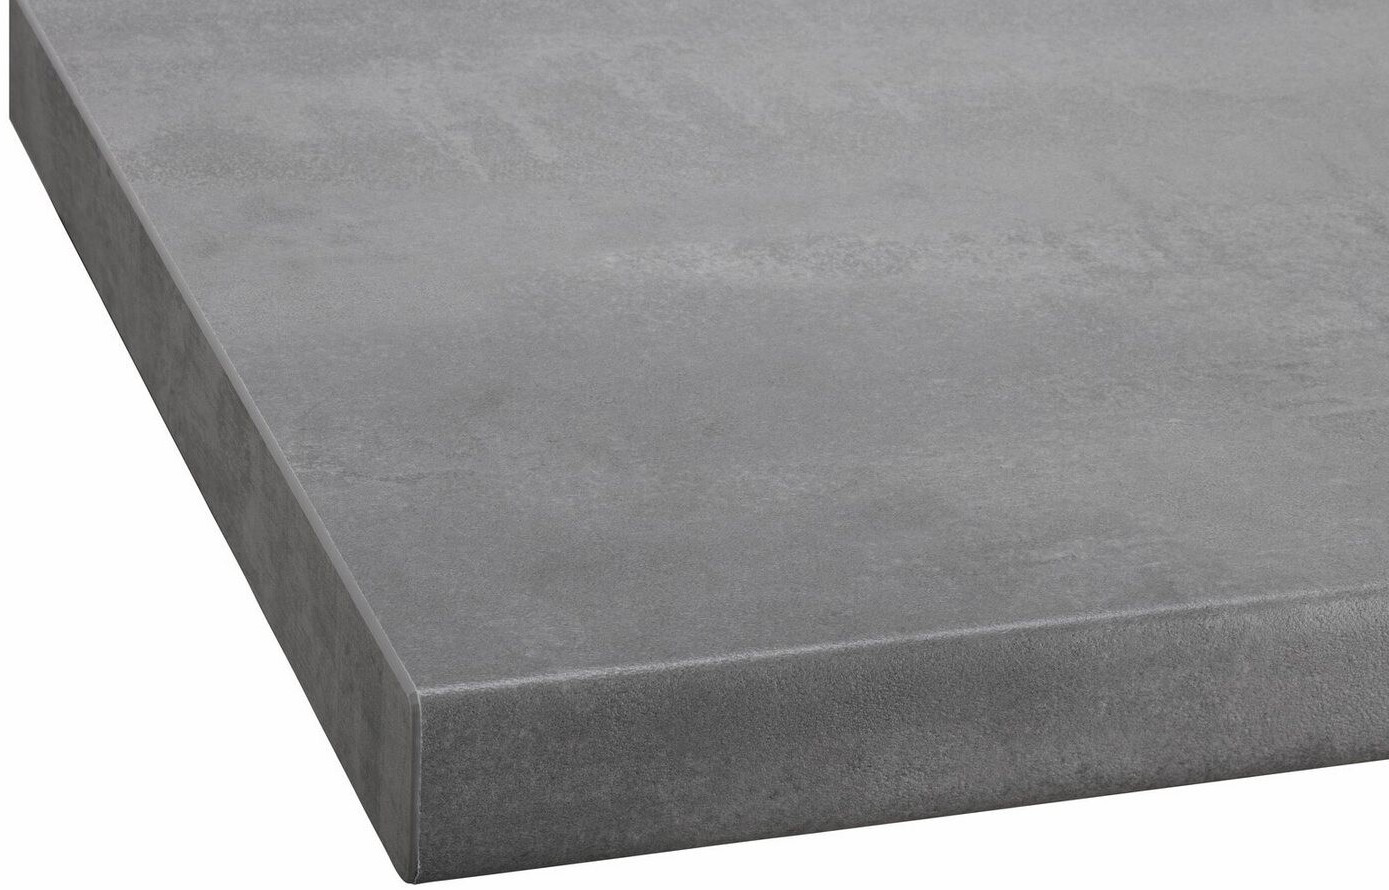 269,99 € ab bei | 38mm Flexi Küchen Wiho Preisvergleich betongrau stark Arbeitsplatte